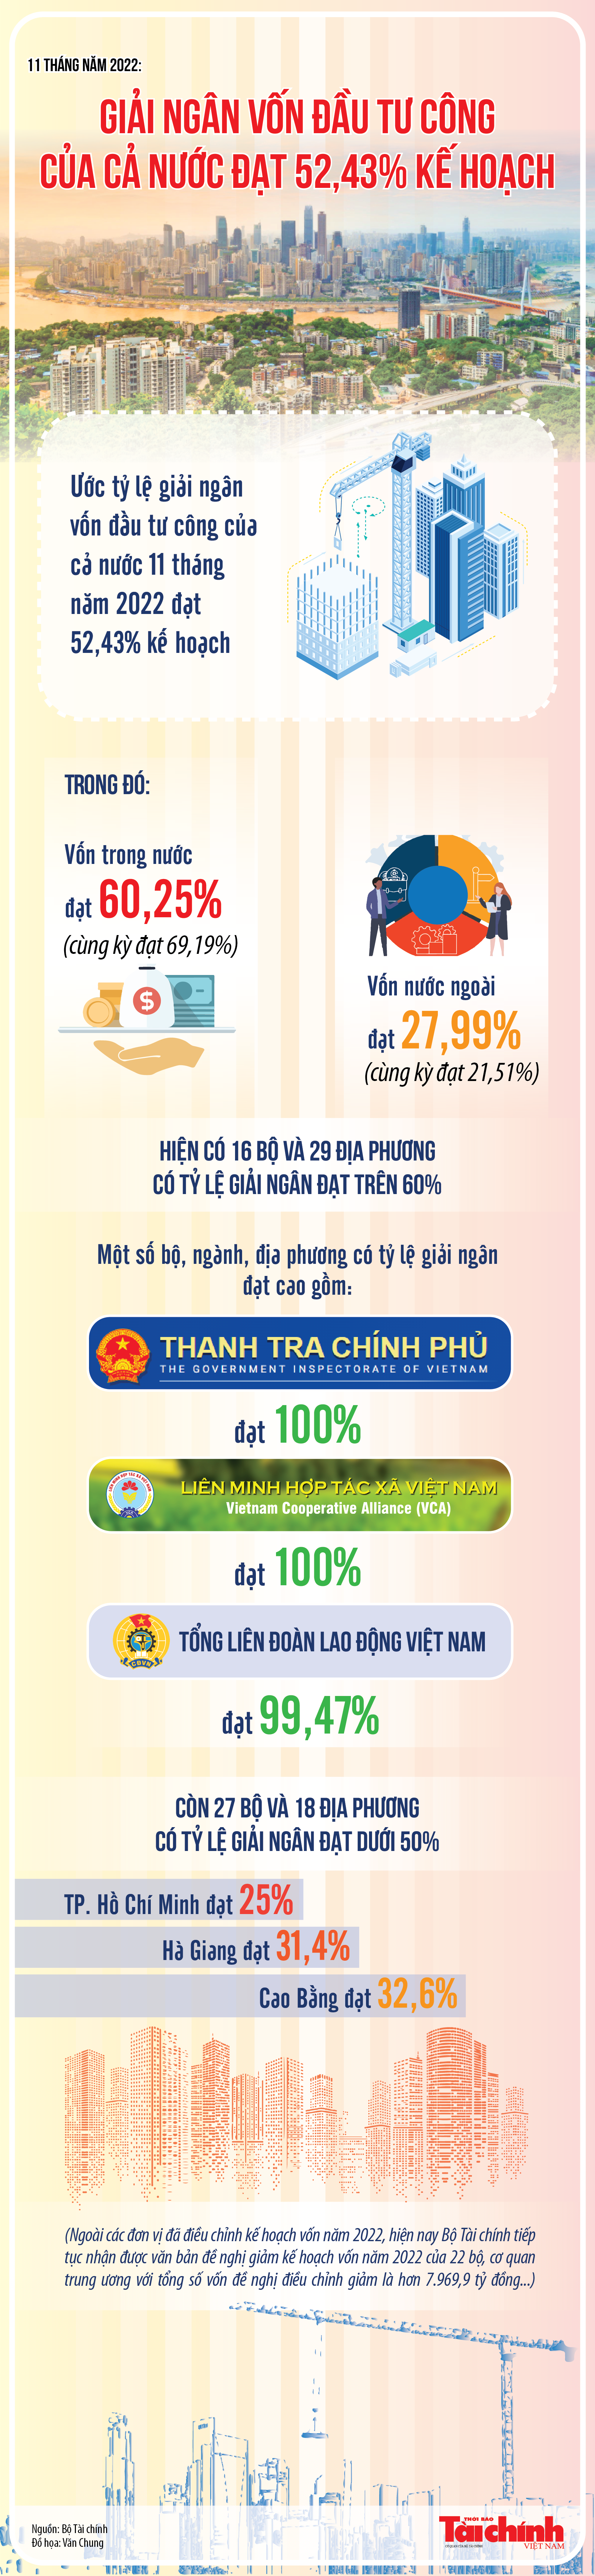 Infographics: Giải ngân vốn đầu tư công 11 tháng ước đạt 52,43%